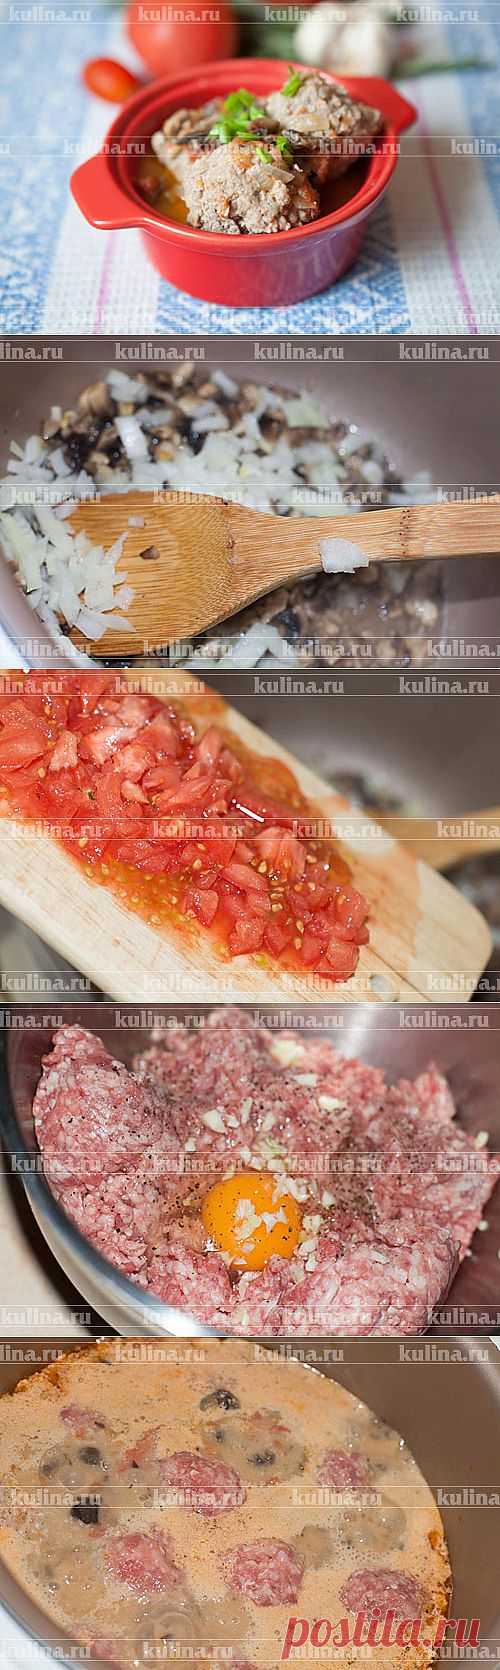 Тефтели в мультиварке – рецепт приготовления с фото от Kulina.Ru